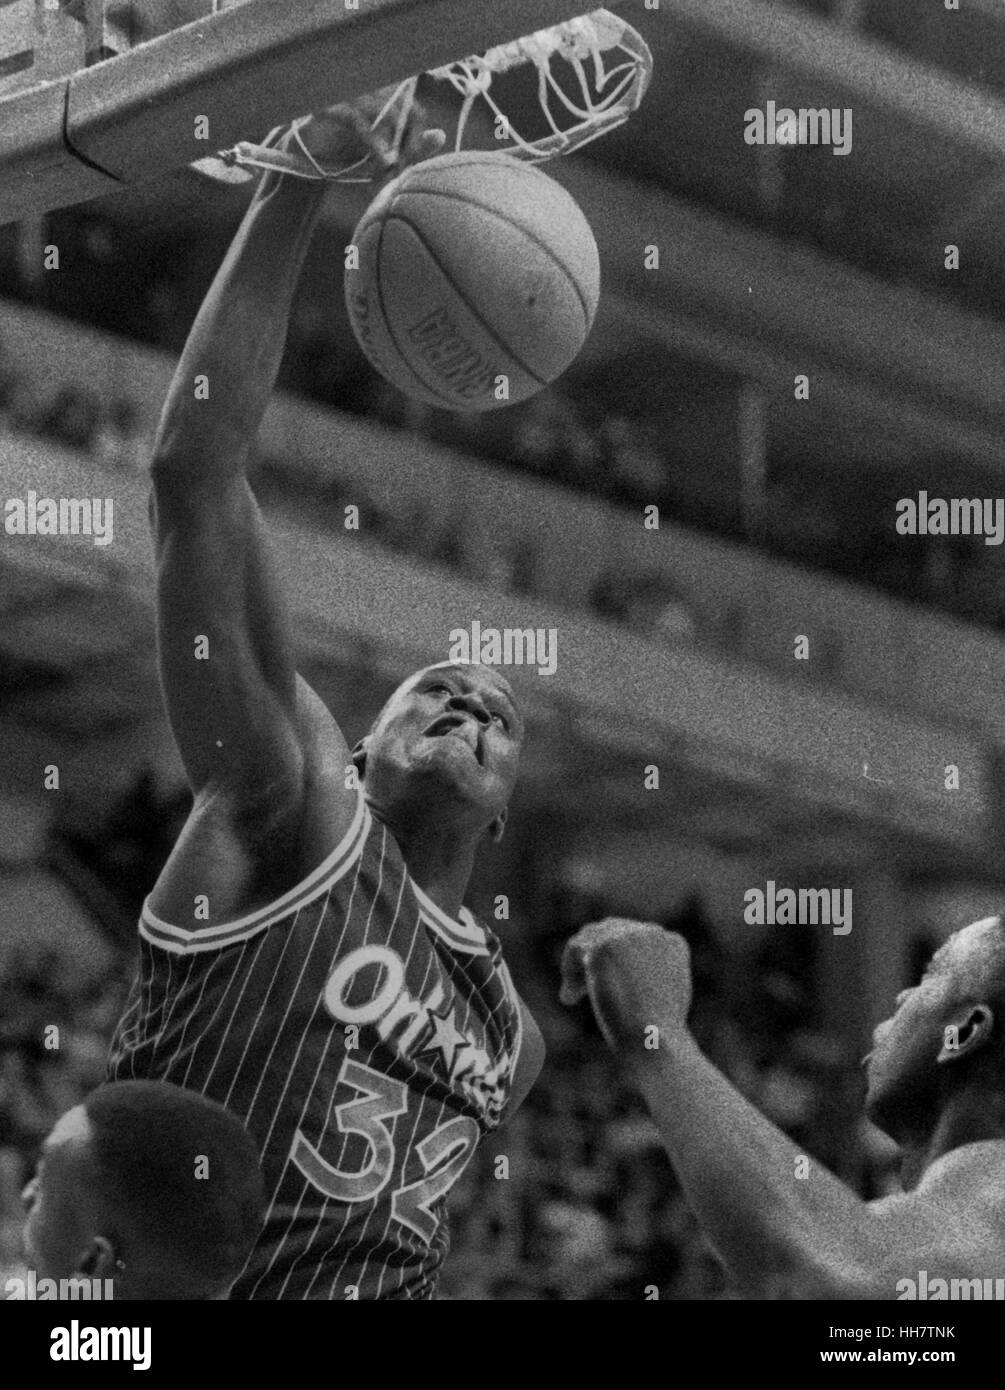 Orlando Magic, Shaquille O'Neal dunks gegen die Boston Celtics im Spiel Aktion Foto von Bill belknap Stockfoto